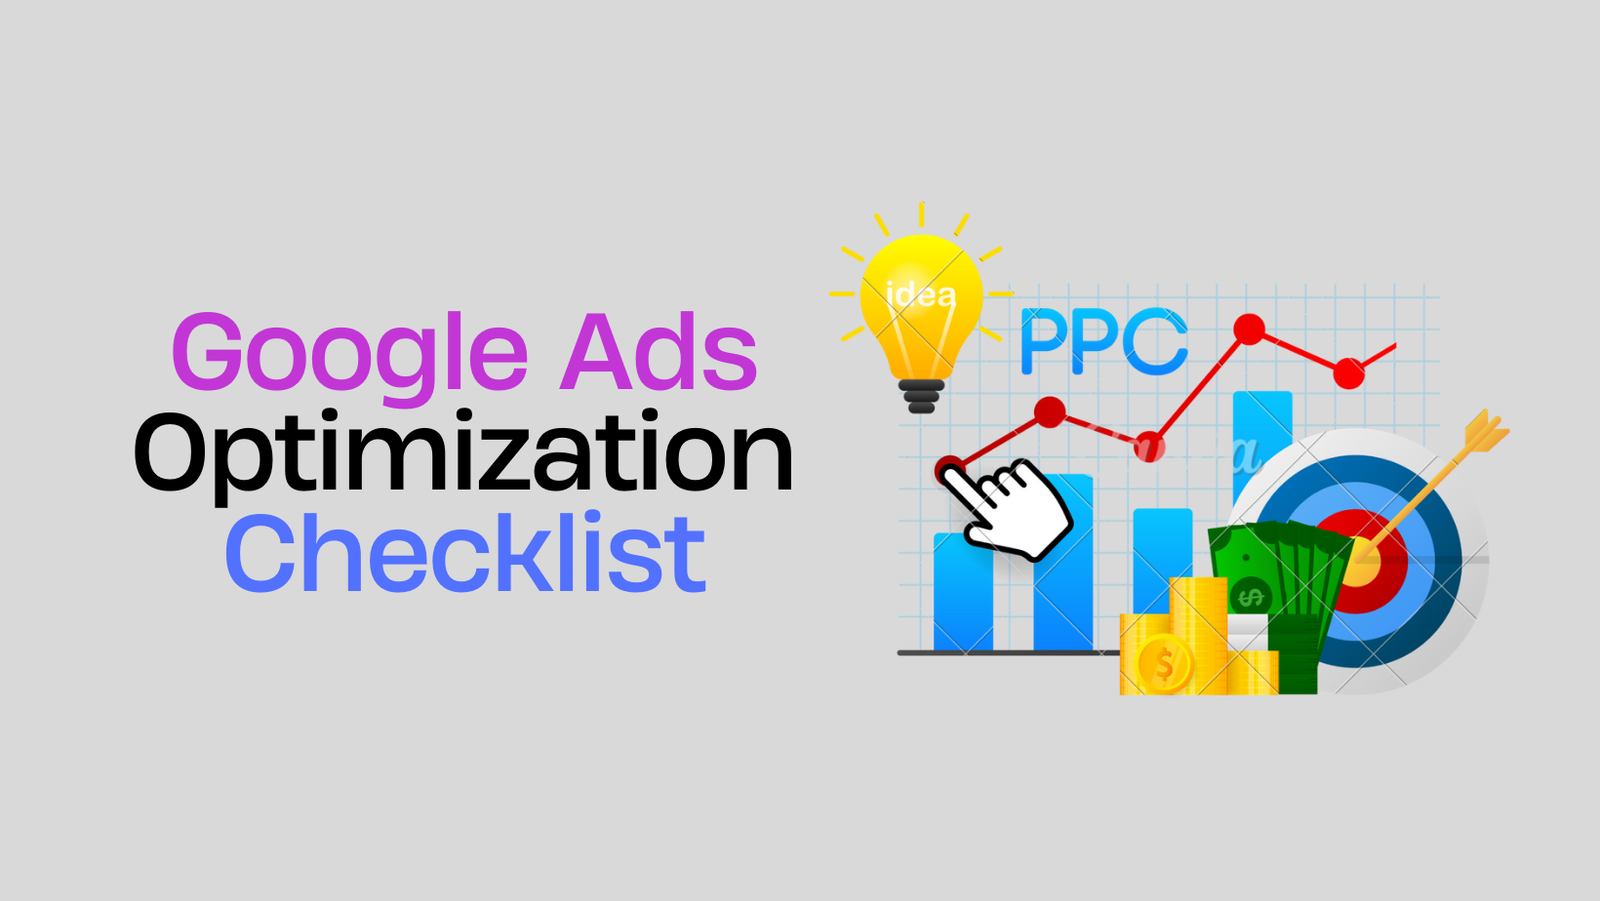 Google Ads Optimization Checklist